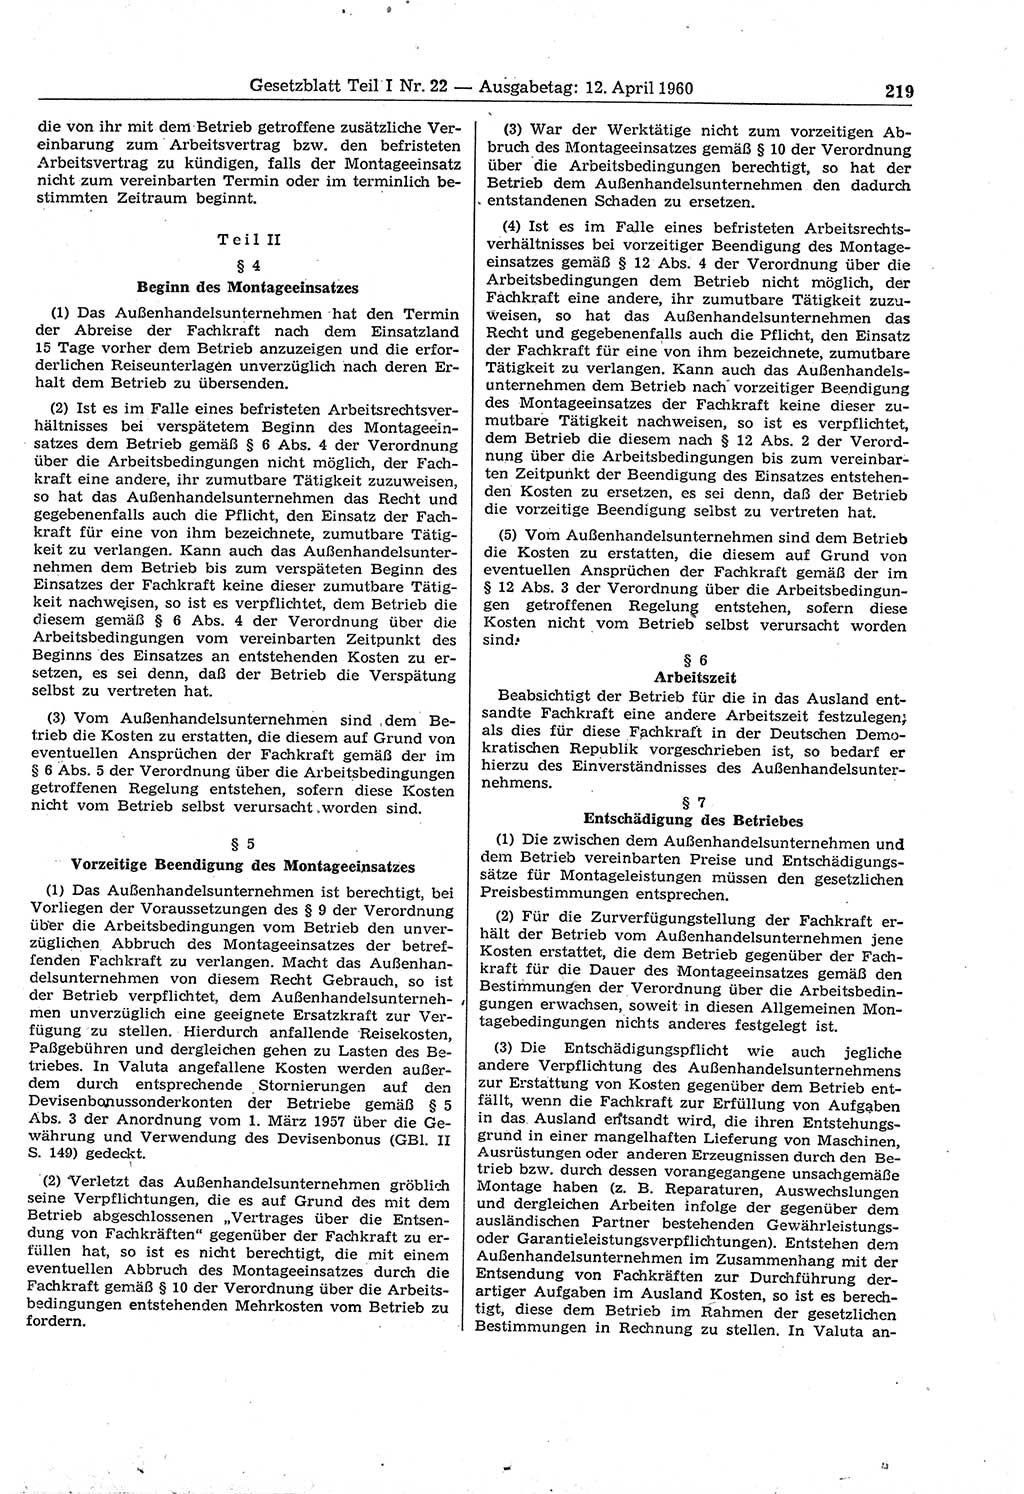 Gesetzblatt (GBl.) der Deutschen Demokratischen Republik (DDR) Teil Ⅰ 1960, Seite 219 (GBl. DDR Ⅰ 1960, S. 219)